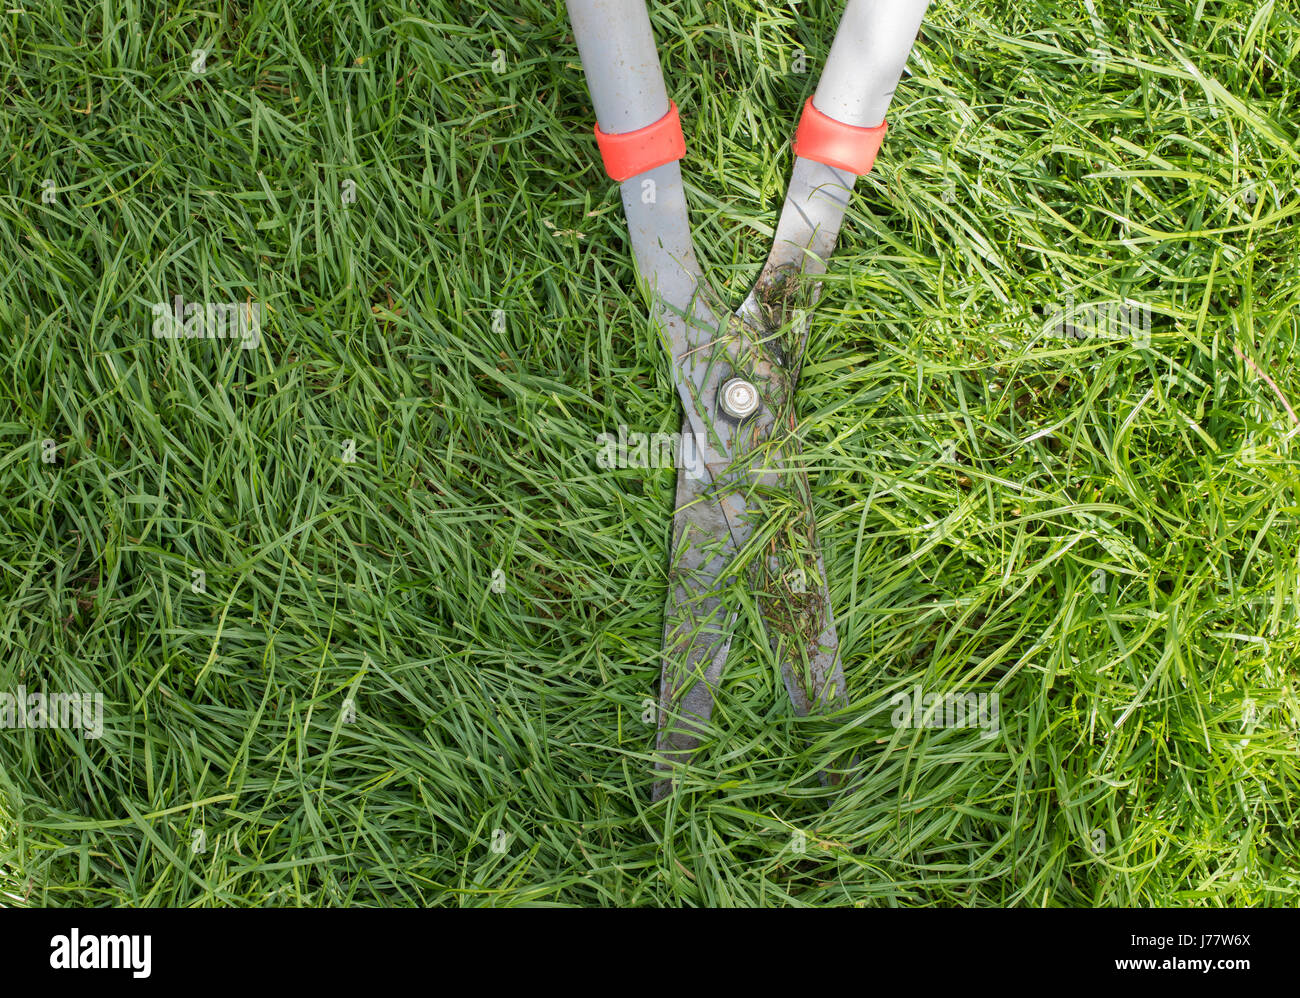 Garden shears cutting grass Stock Photo